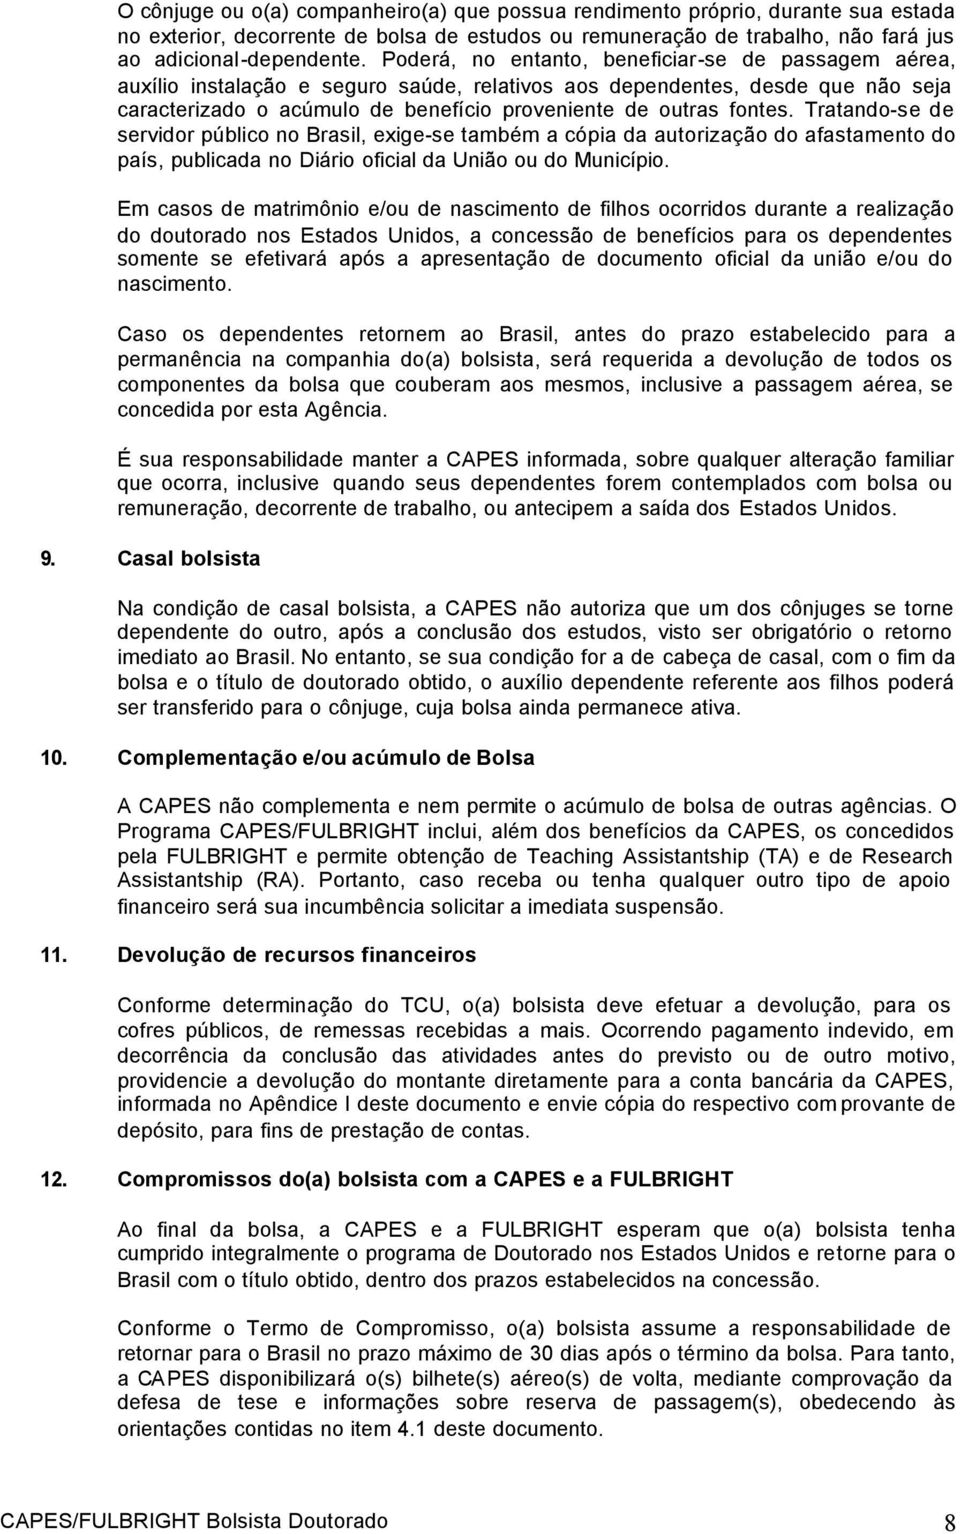 Tratando-se de servidor público no Brasil, exige-se também a cópia da autorização do afastamento do país, publicada no Diário oficial da União ou do Município.